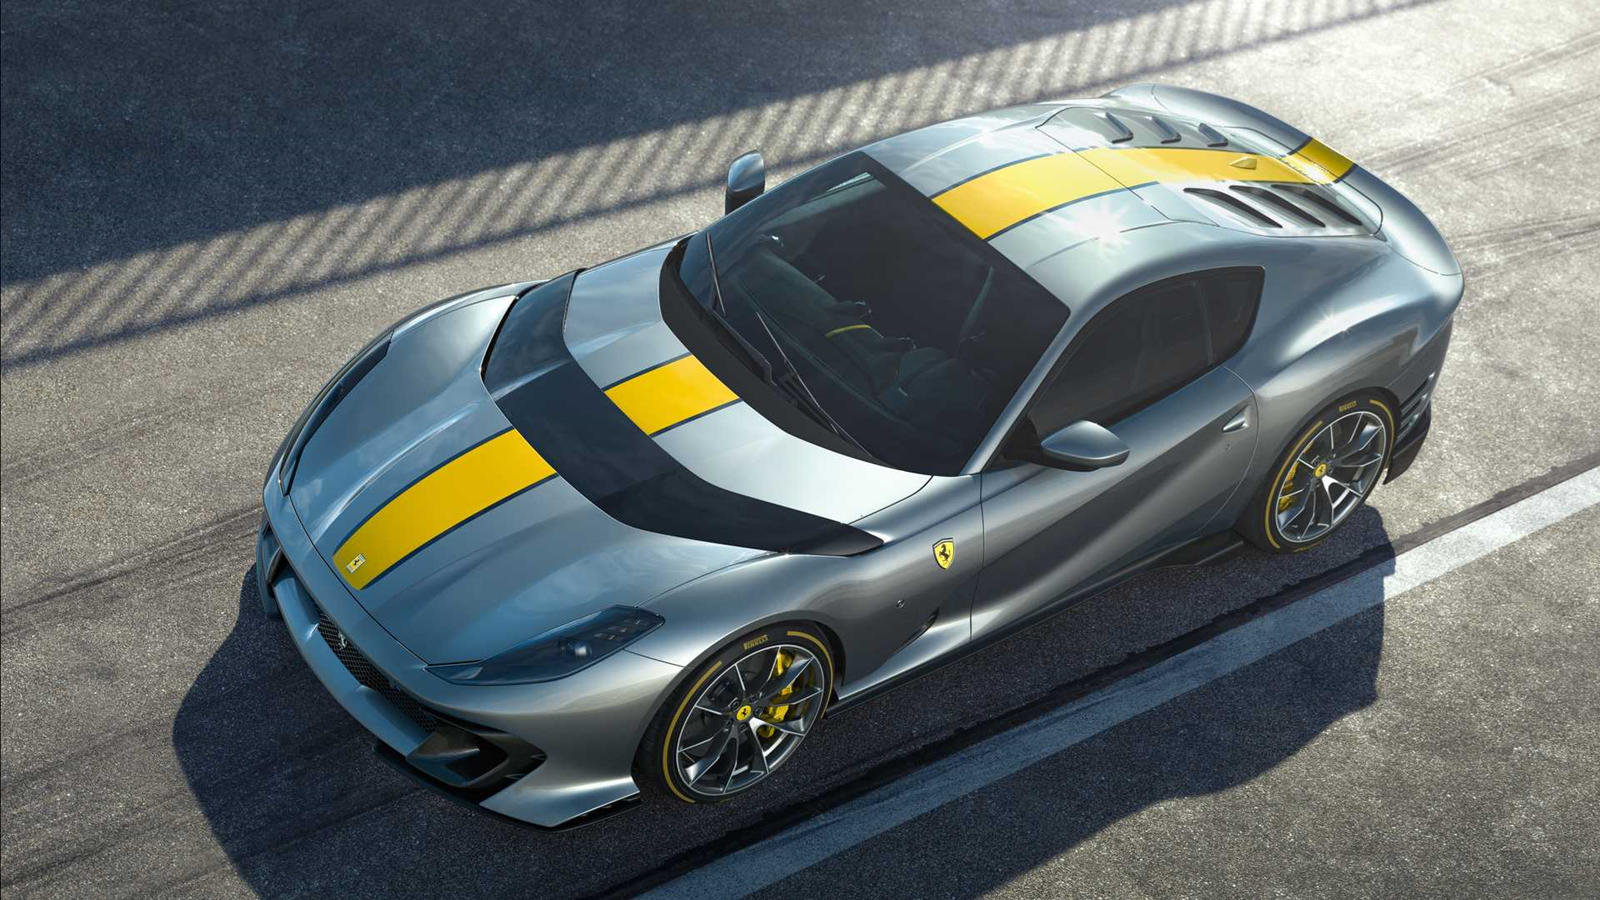 В беседе с Autocar технический руководитель Ferrari Майкл Лейтерс намекнул, что Ferrari уже разрабатывает еще более мощный двигатель V12. «Мы работаем над этим», - подразнил он. К сожалению, Ferrari не намекает, какая модель будет использовать более 